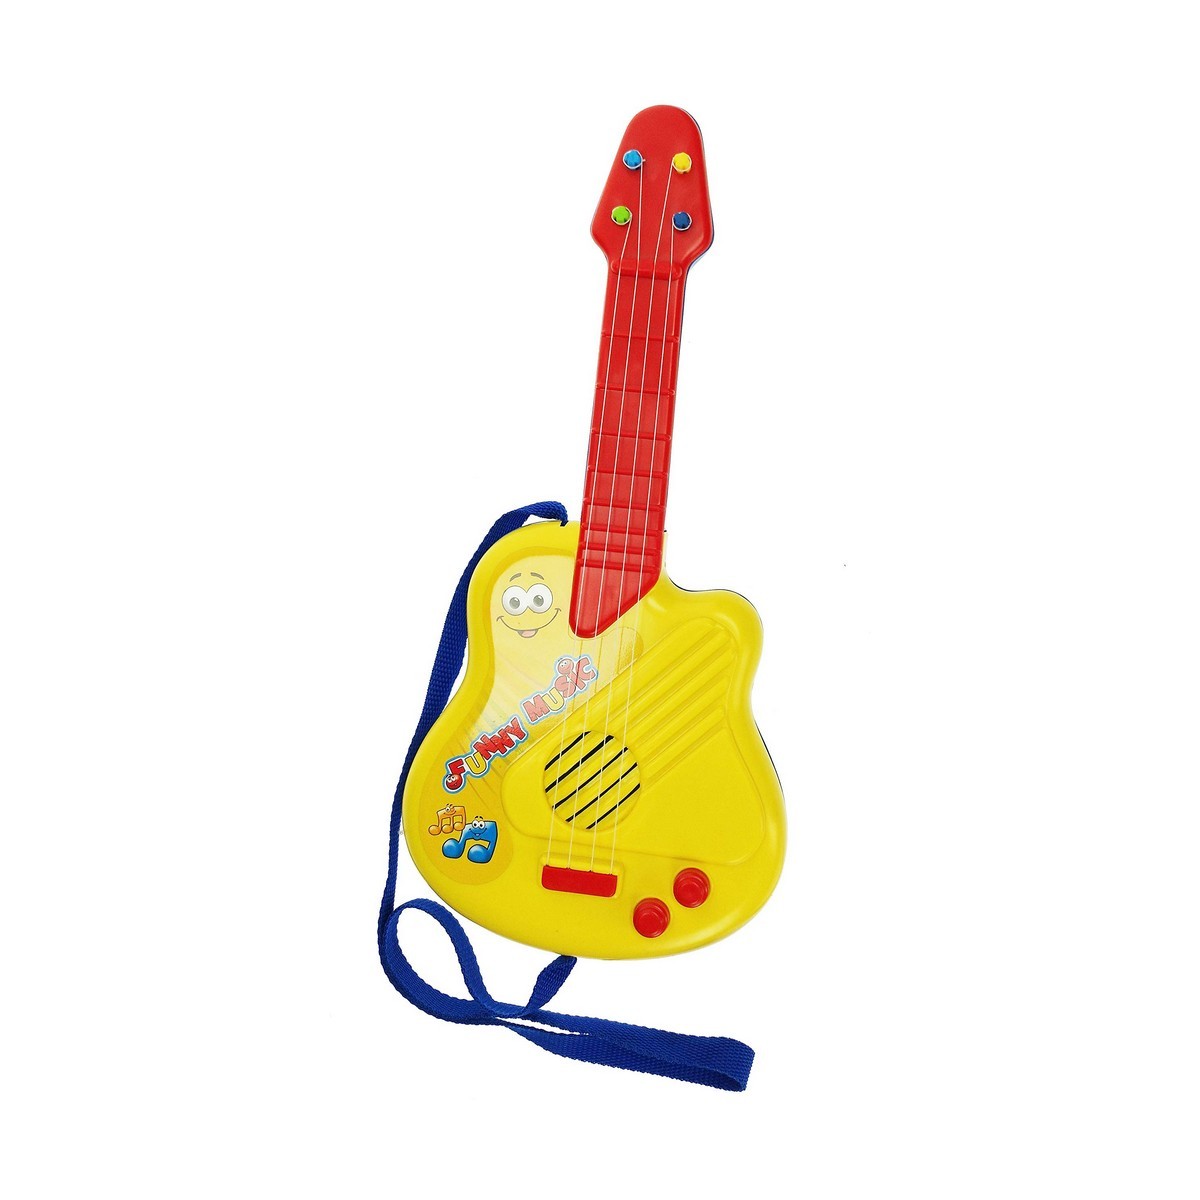 Guitare pour Enfant Reig Microphone Rose